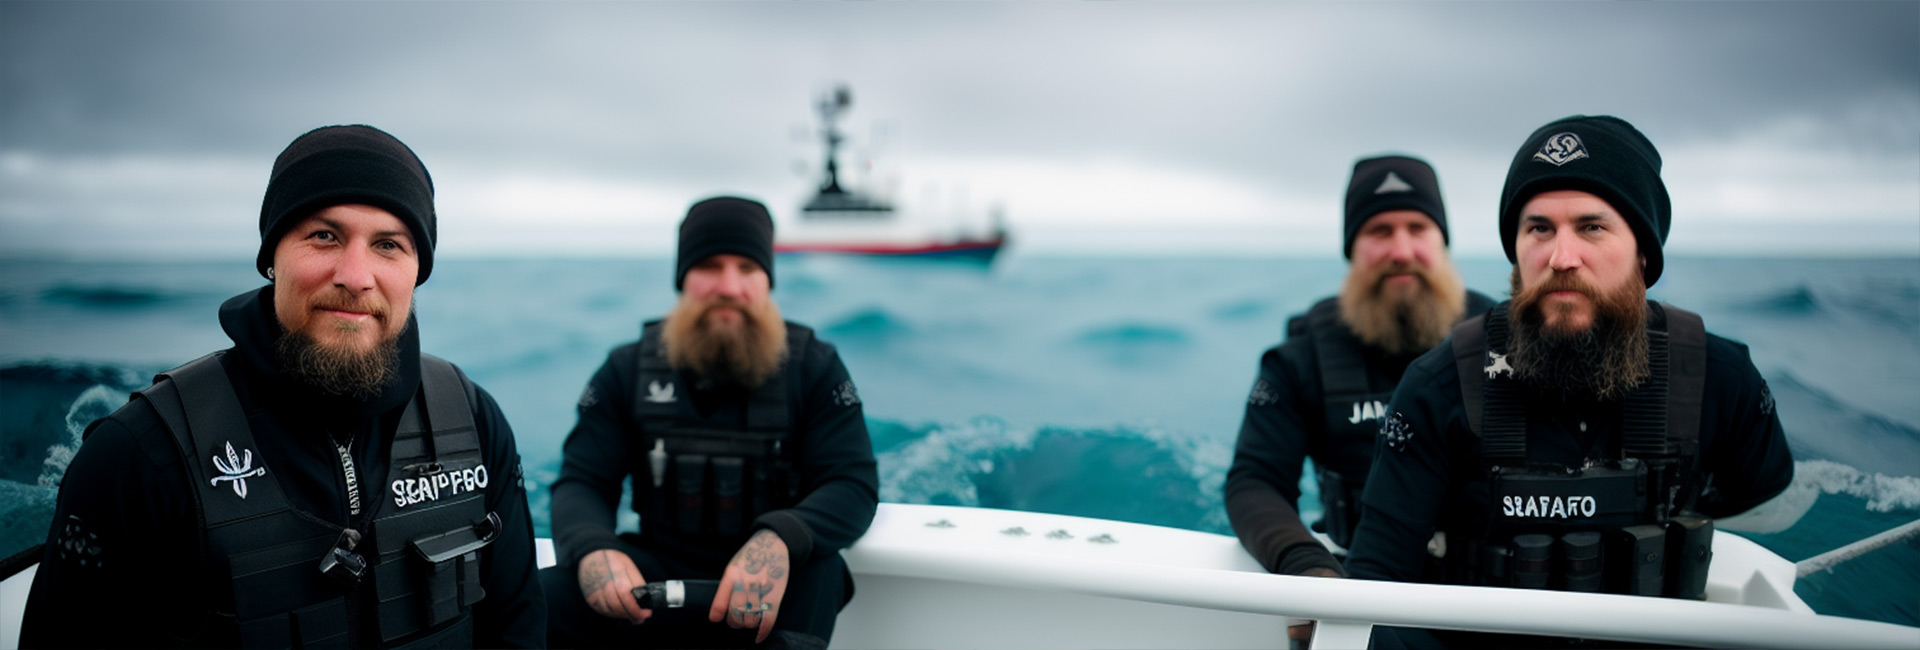 Sea Shepherd ist eine international tätige Non-Profit-Organisation, die sich dem Schutz der Meere und der Tierwelt verschrieben hat.